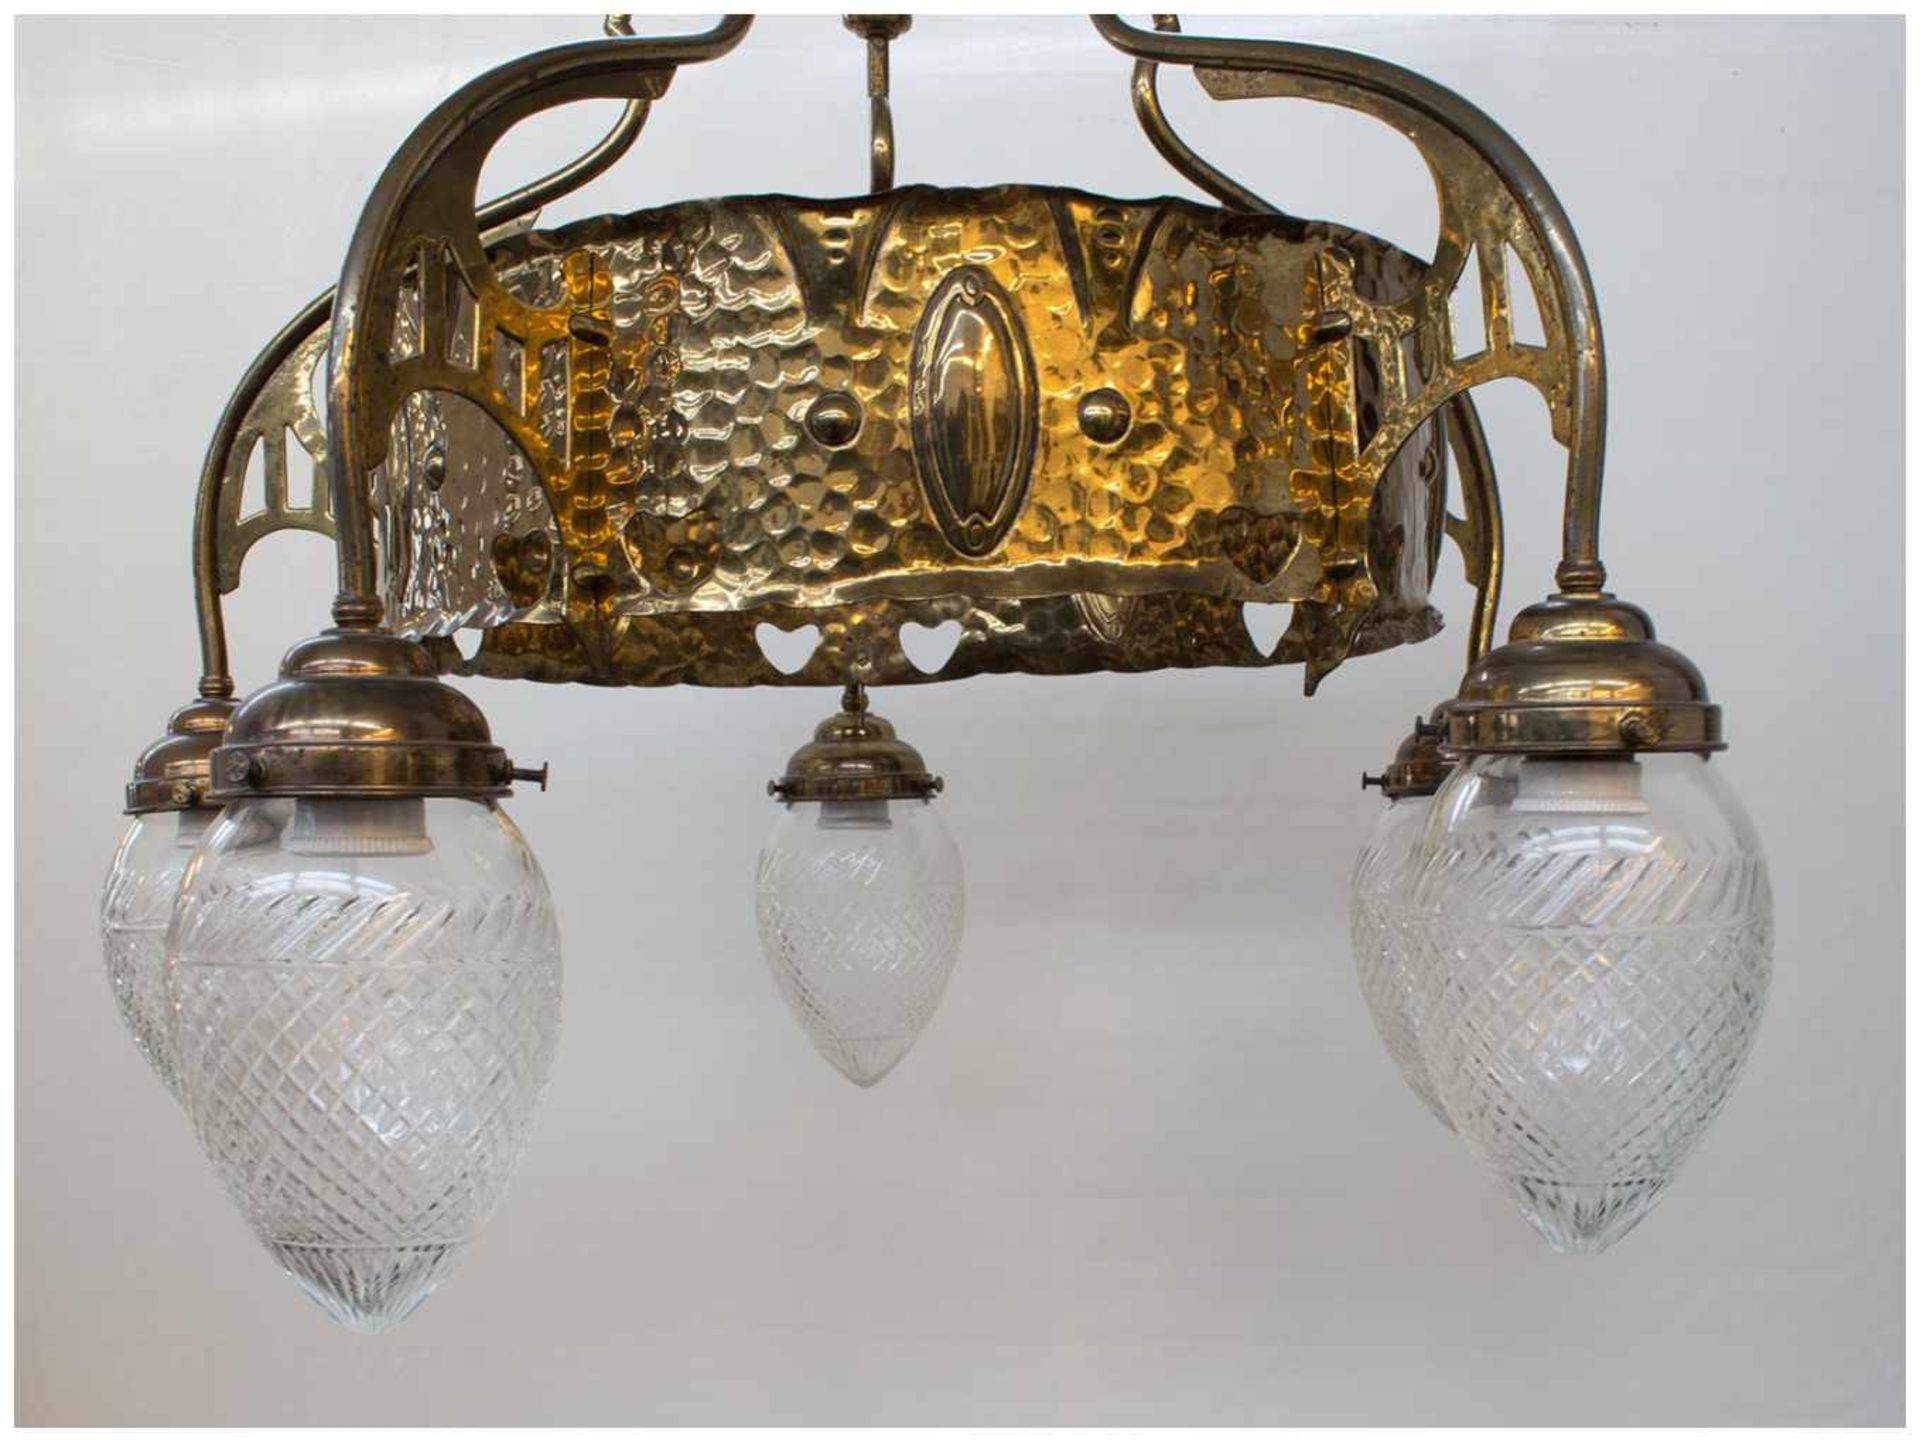 Jugendstil Deckenlampe um 1900, Messing getrieben mit schöner Jugendstilornamentik, 5 flammig mit - Bild 2 aus 2